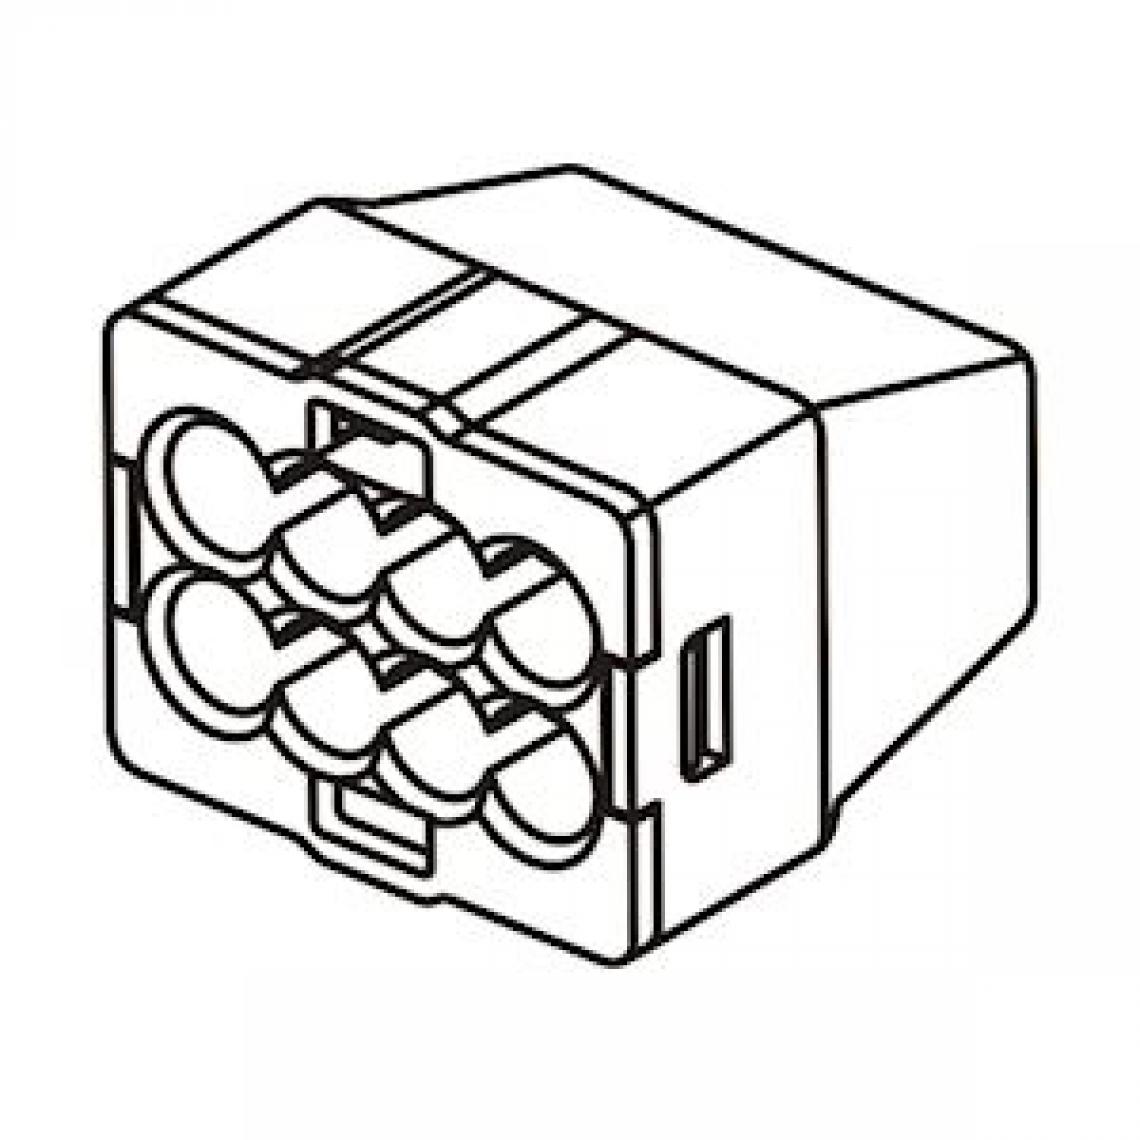 Bizline - borne de connexion - automatique - 8 entrées - 0.5 à 2.5 mm2 - noire - boite de 50 - bizline 103408 - Accessoires de câblage